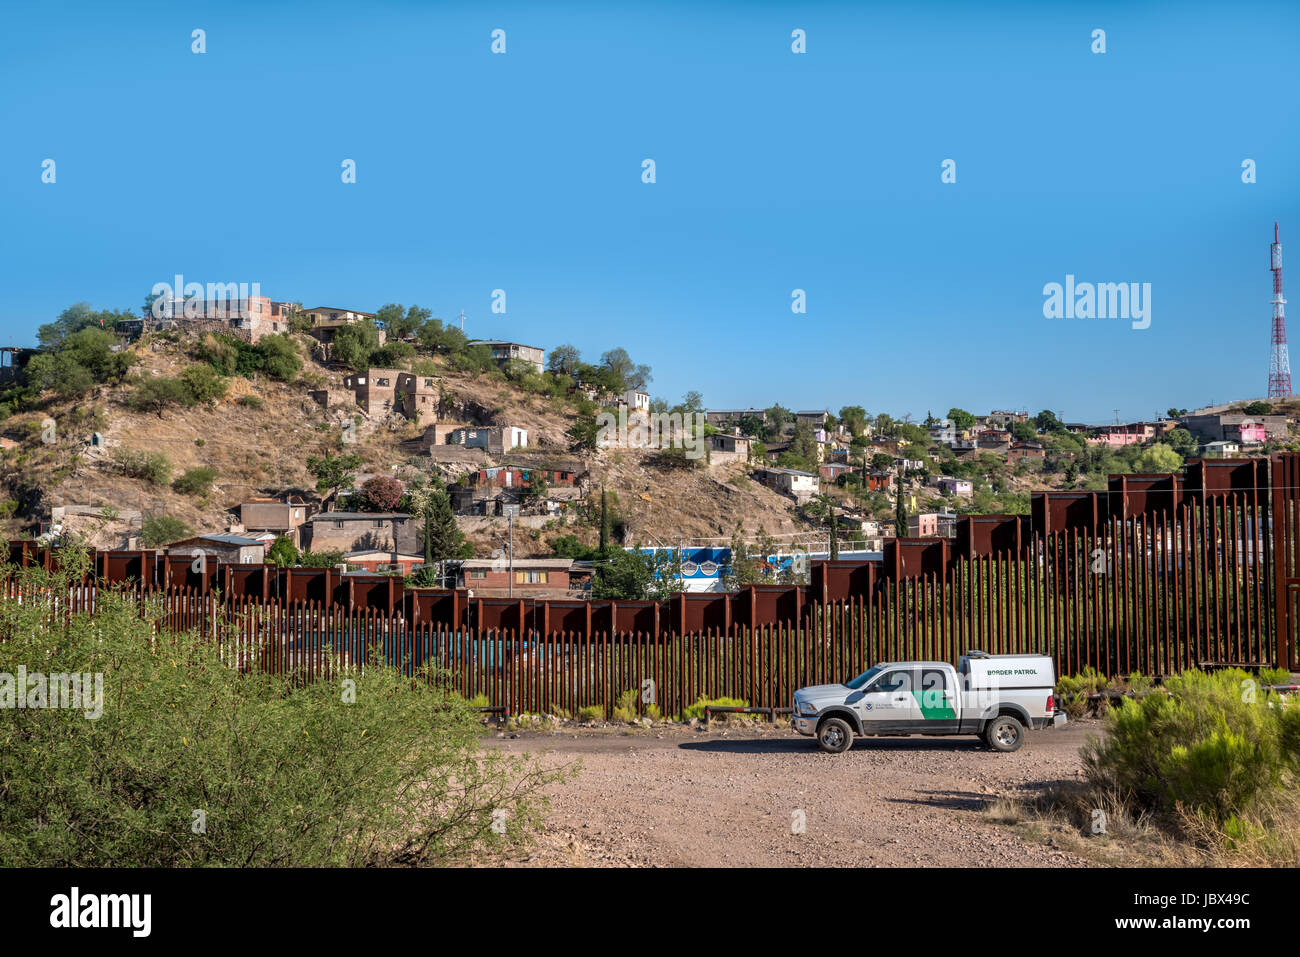 Border Patrol vor der Zaun zwischen den USA und Mexiko in Nogales, Arizona, Vereinigte Staaten; eine Frage der aktuellen Politik und Debatte Stockfoto